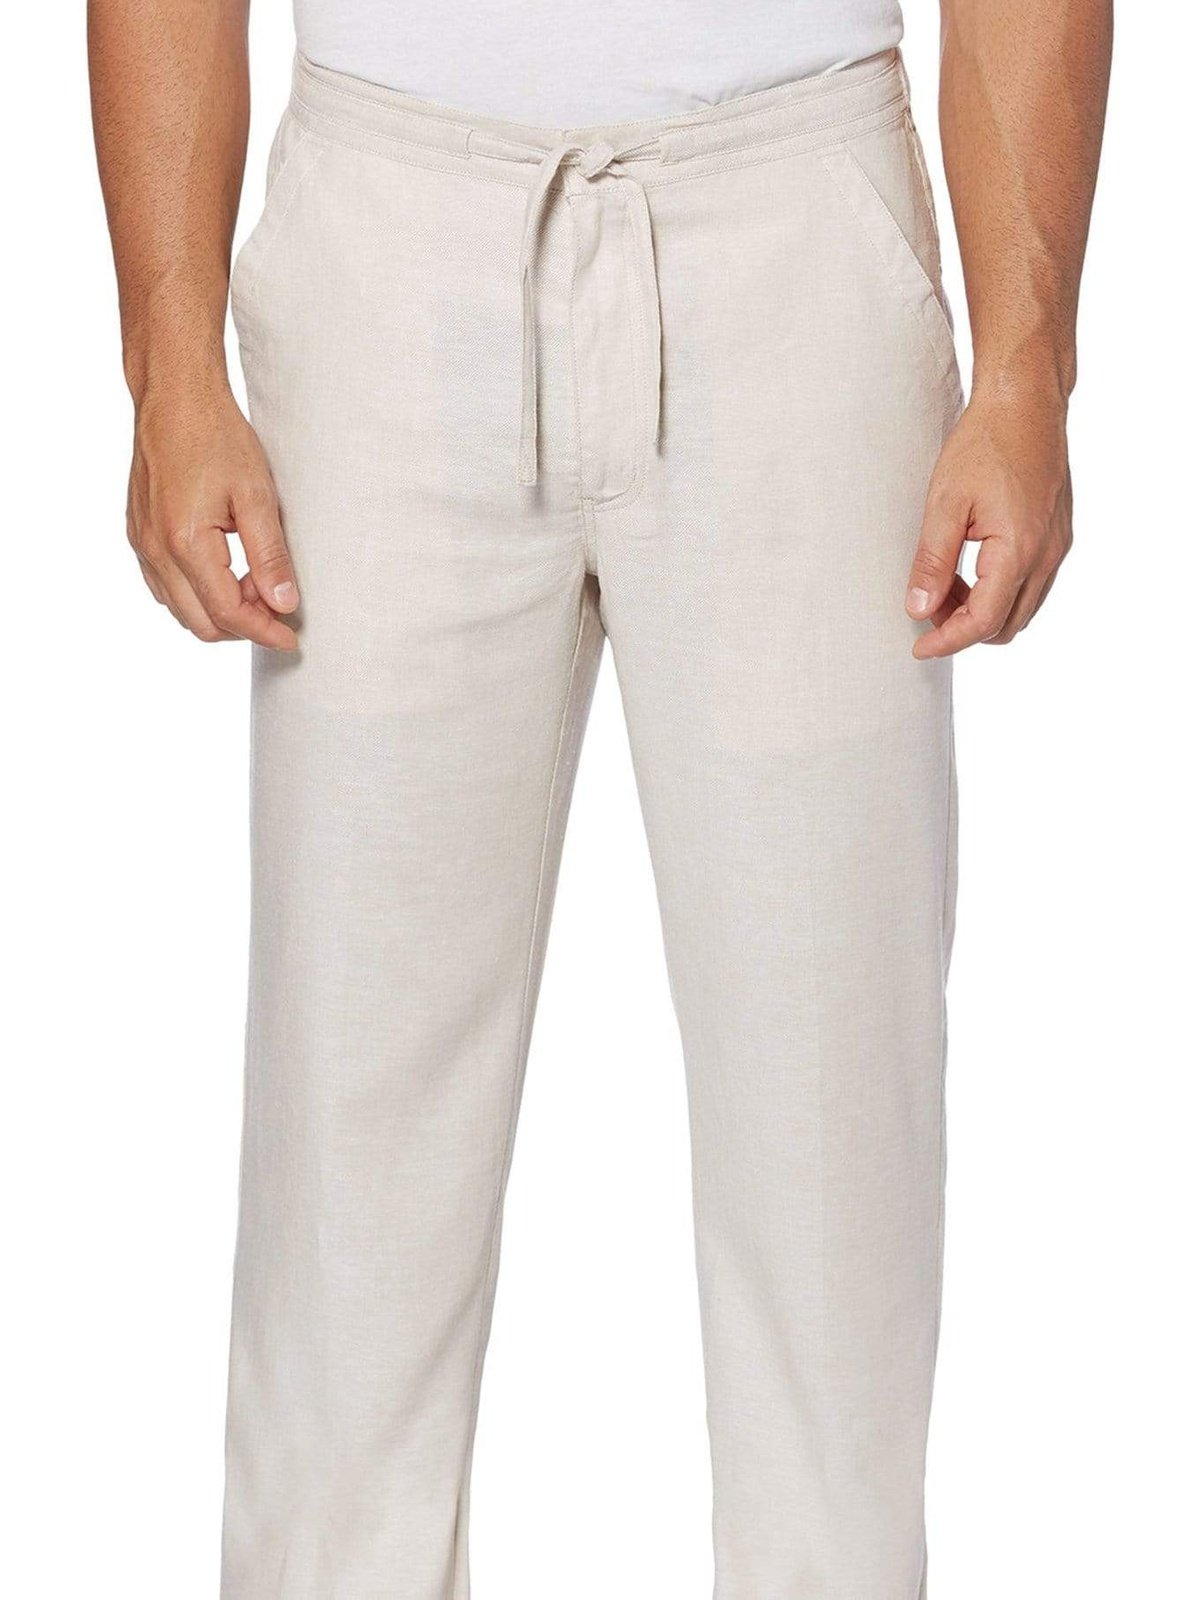 Buy Women's Linen Casual Wear Regular Fit Pants